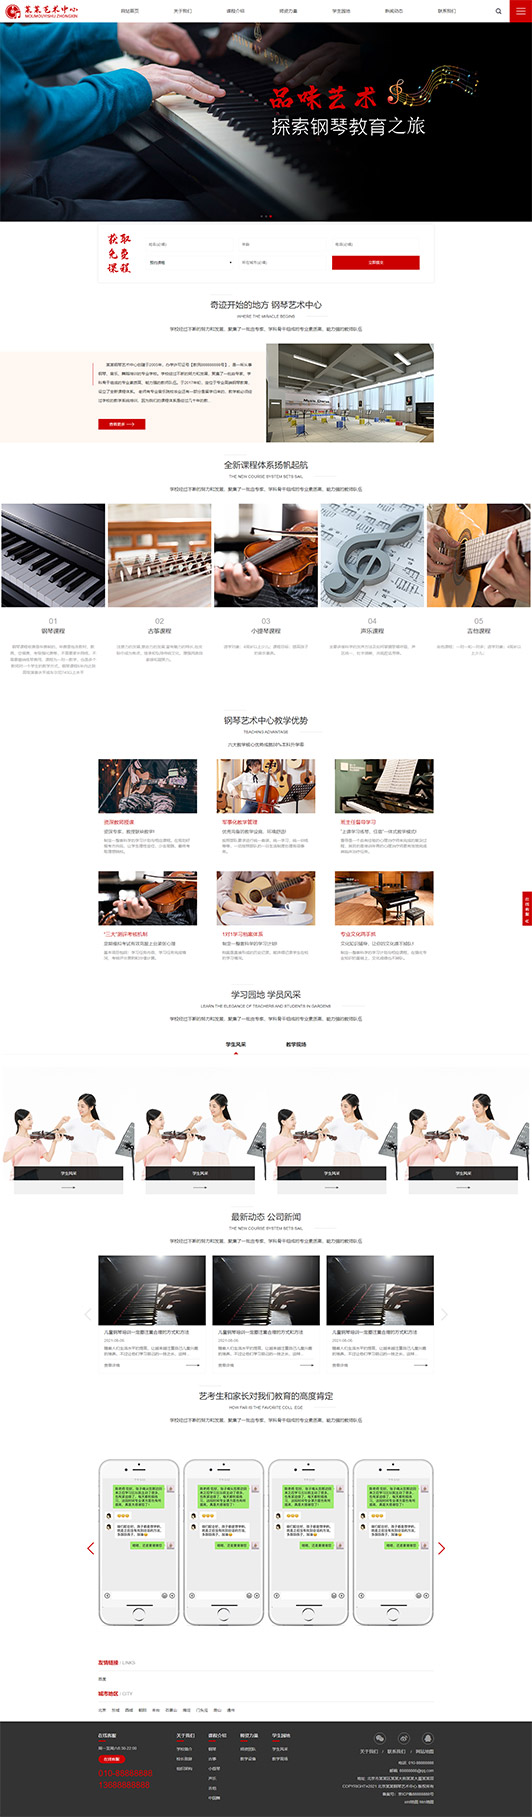 万宁钢琴艺术培训公司响应式企业网站